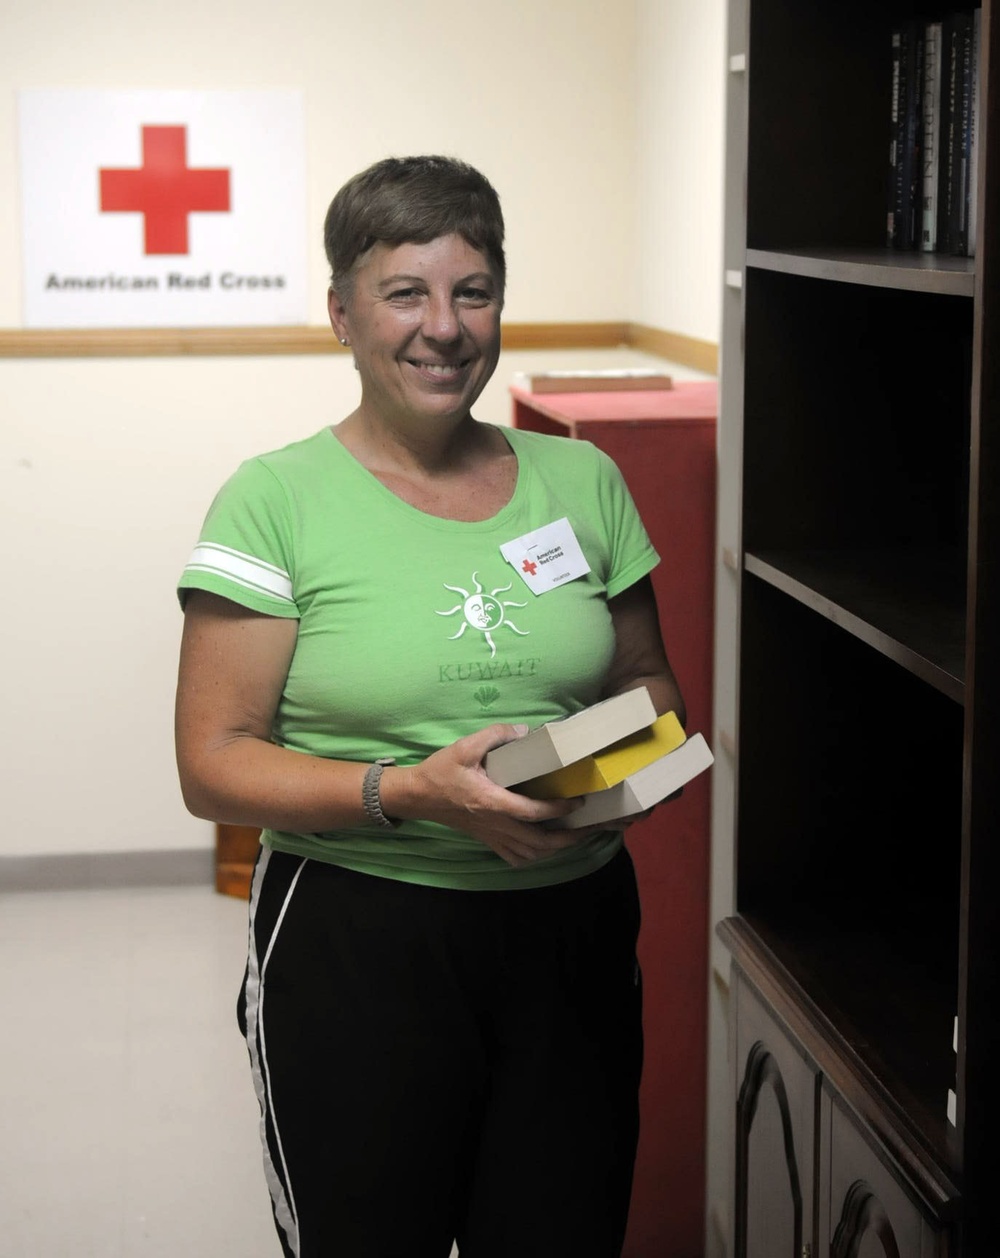 DVIDS - News - Third Army volunteers help Red Cross